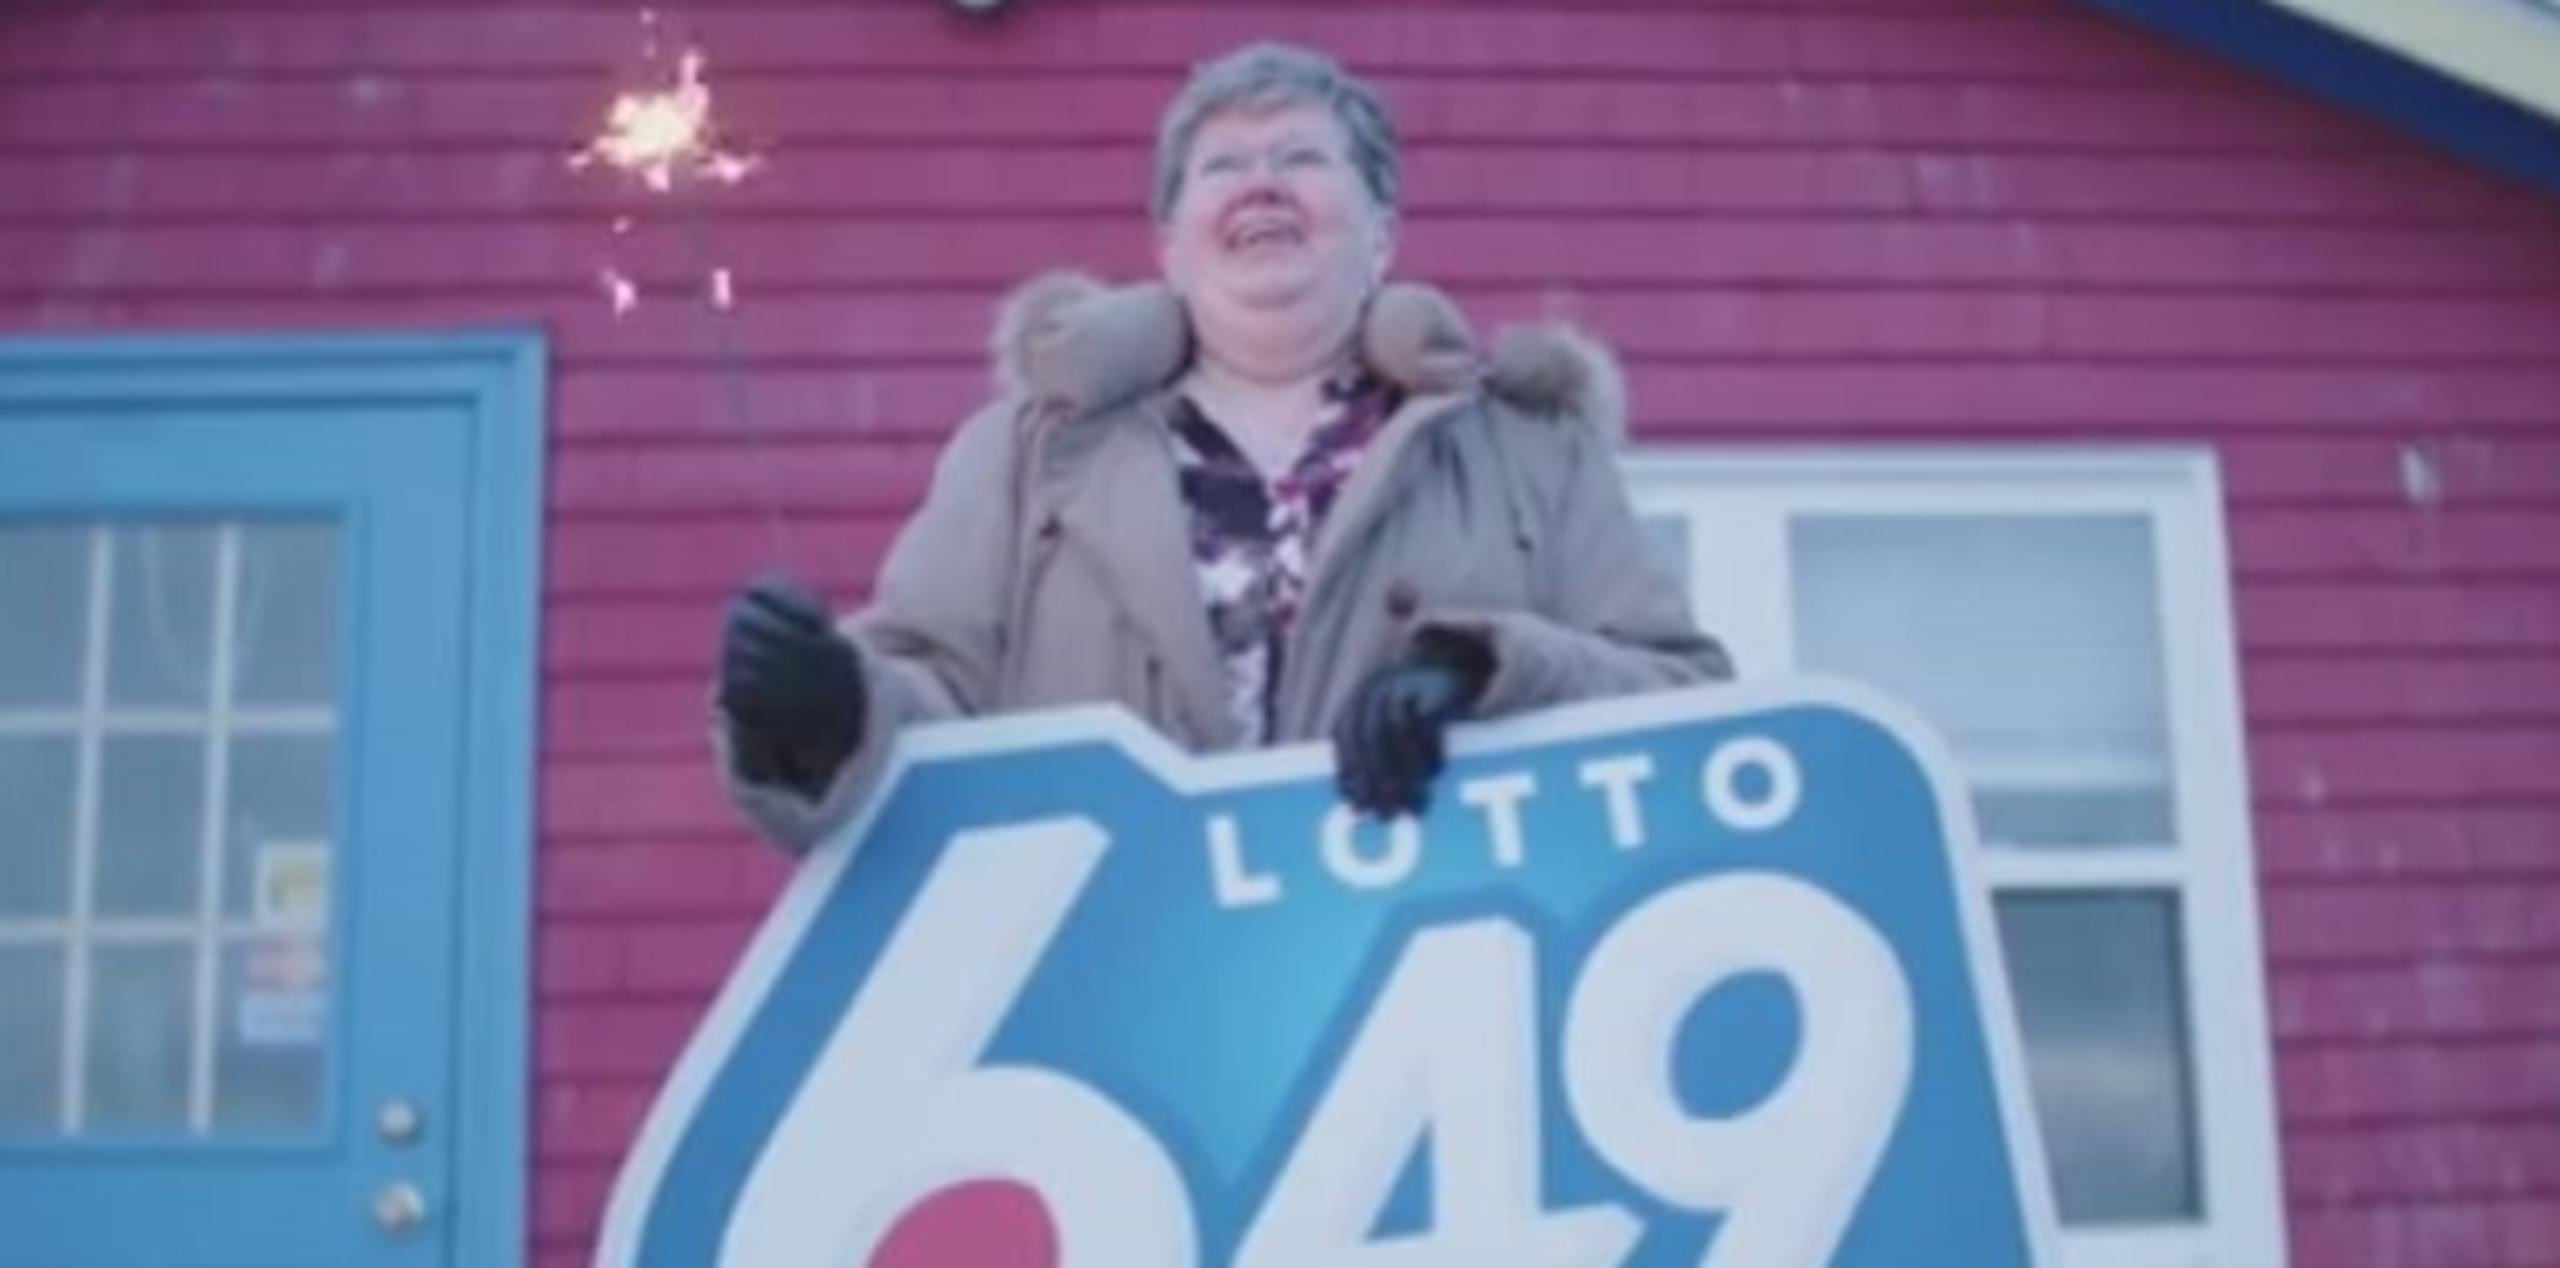 La agraciada identificada como Olga Beno, residente de Nueva Escocia ganó cerca de $4 millones en el sorteo del pasado 28 de diciembre. (Captura de vídeo)